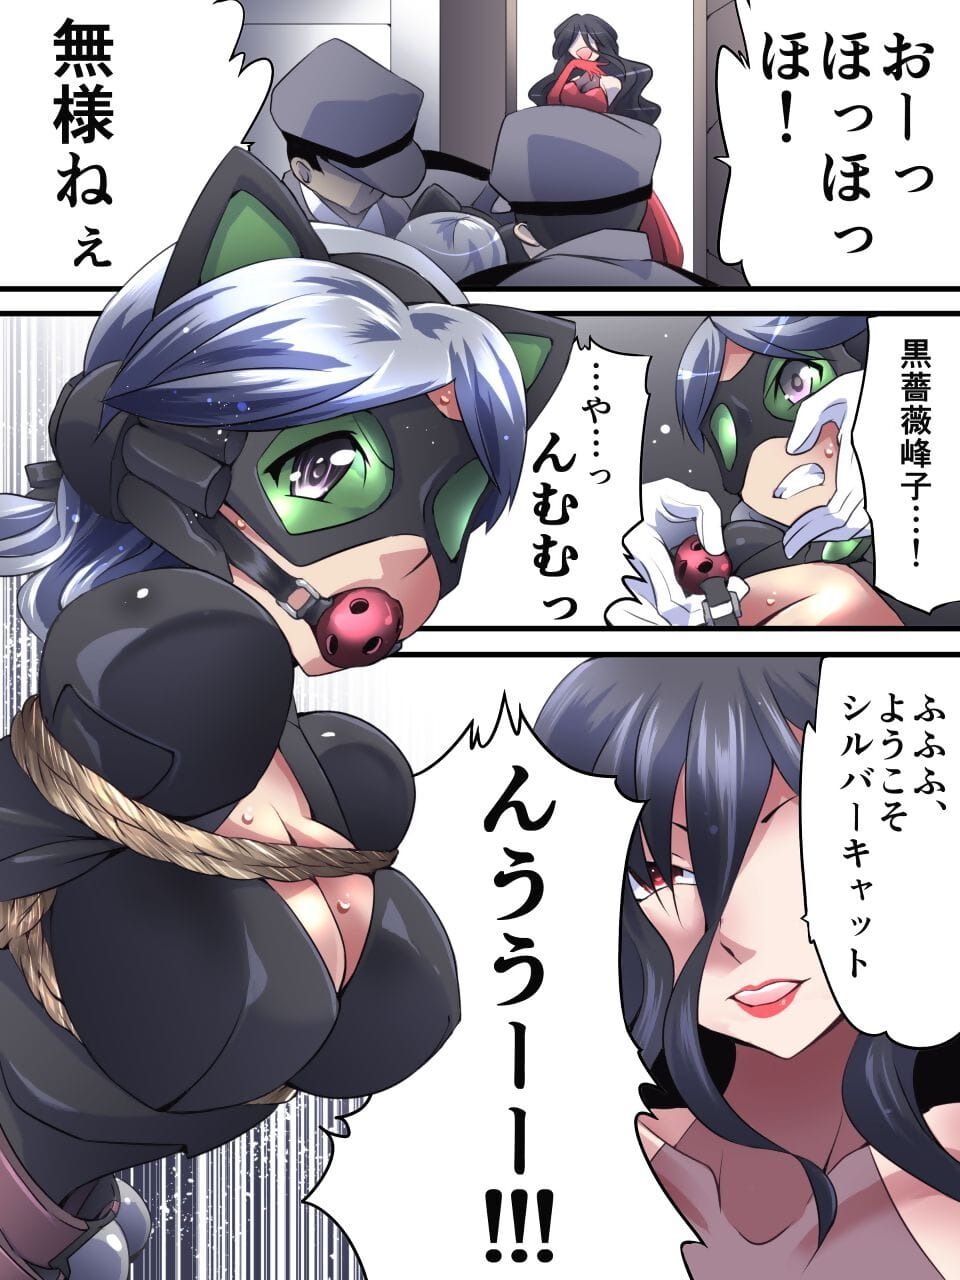 lạc Bạc con mèo manga cấm Dai nư page 1